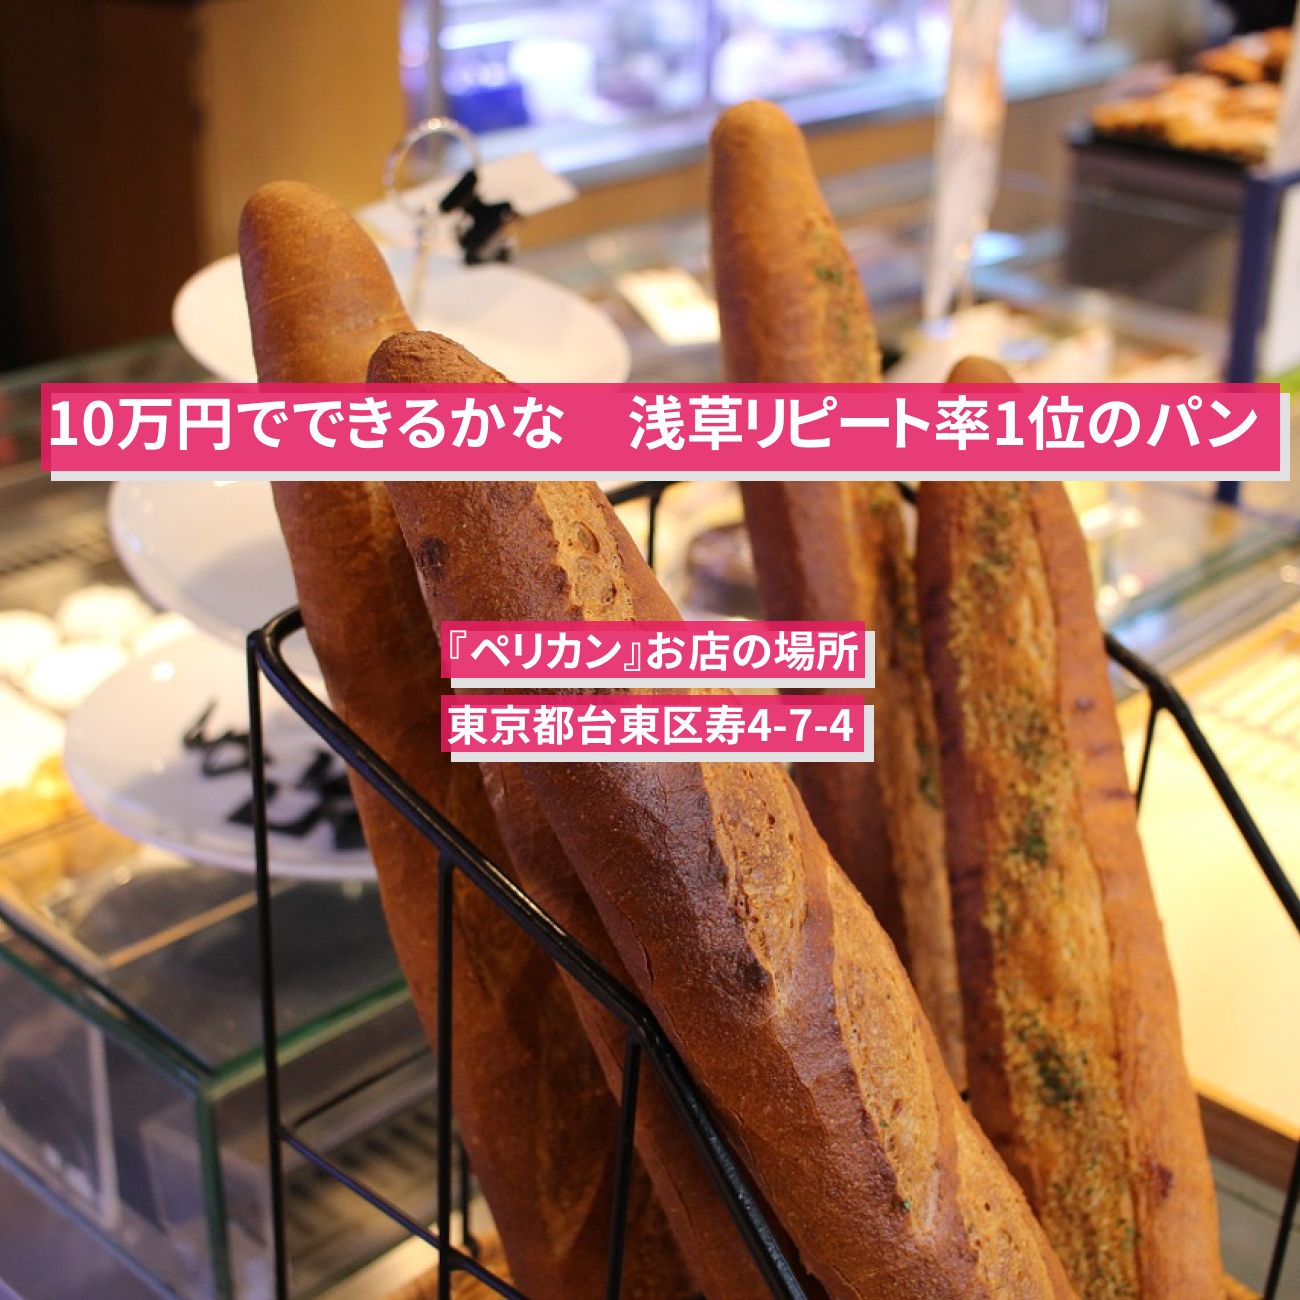 【10万円でできるかな】浅草1位のパン(食パン・ロールパン)『ペリカン』お店の場所